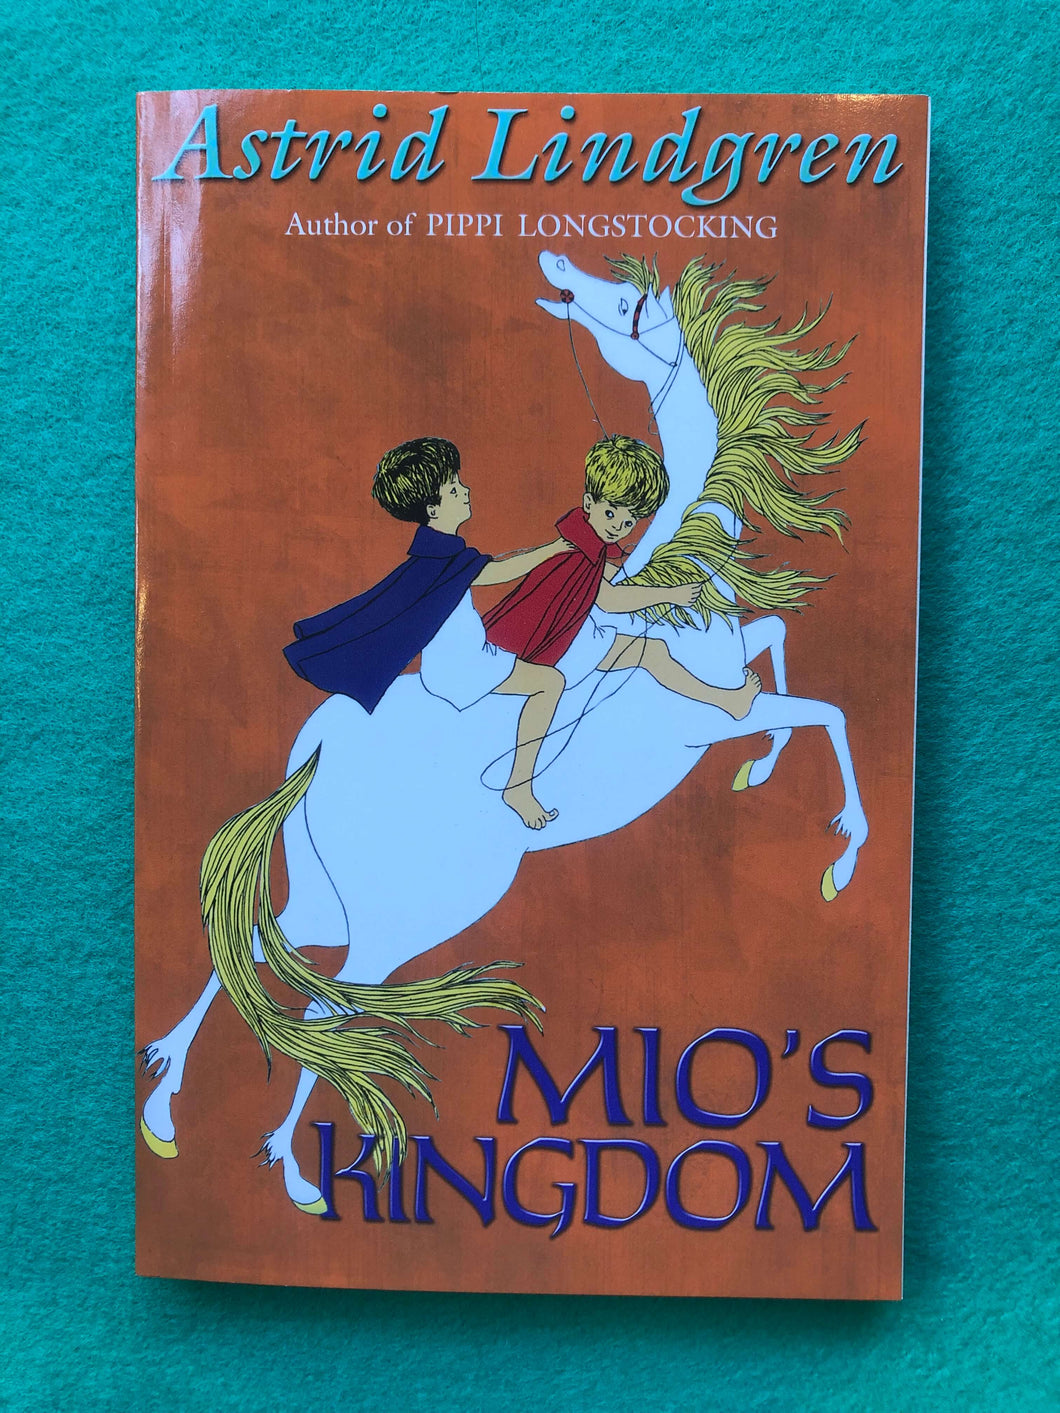 Astrid Lindgren - Mio’s Kingdom